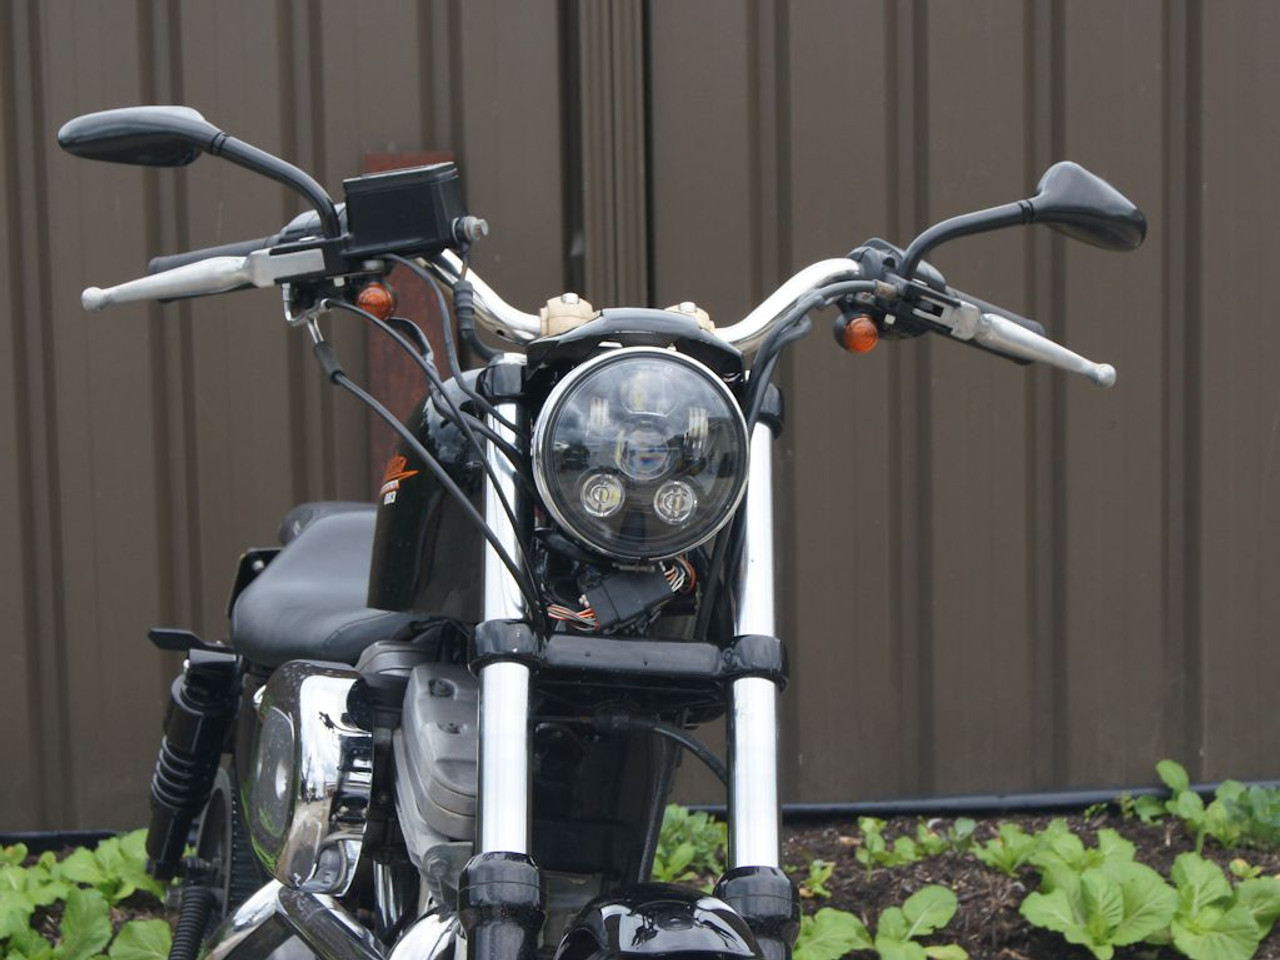 2008 Harley-Davidson Sportster Nightster (EFI) - XL 1200N Air